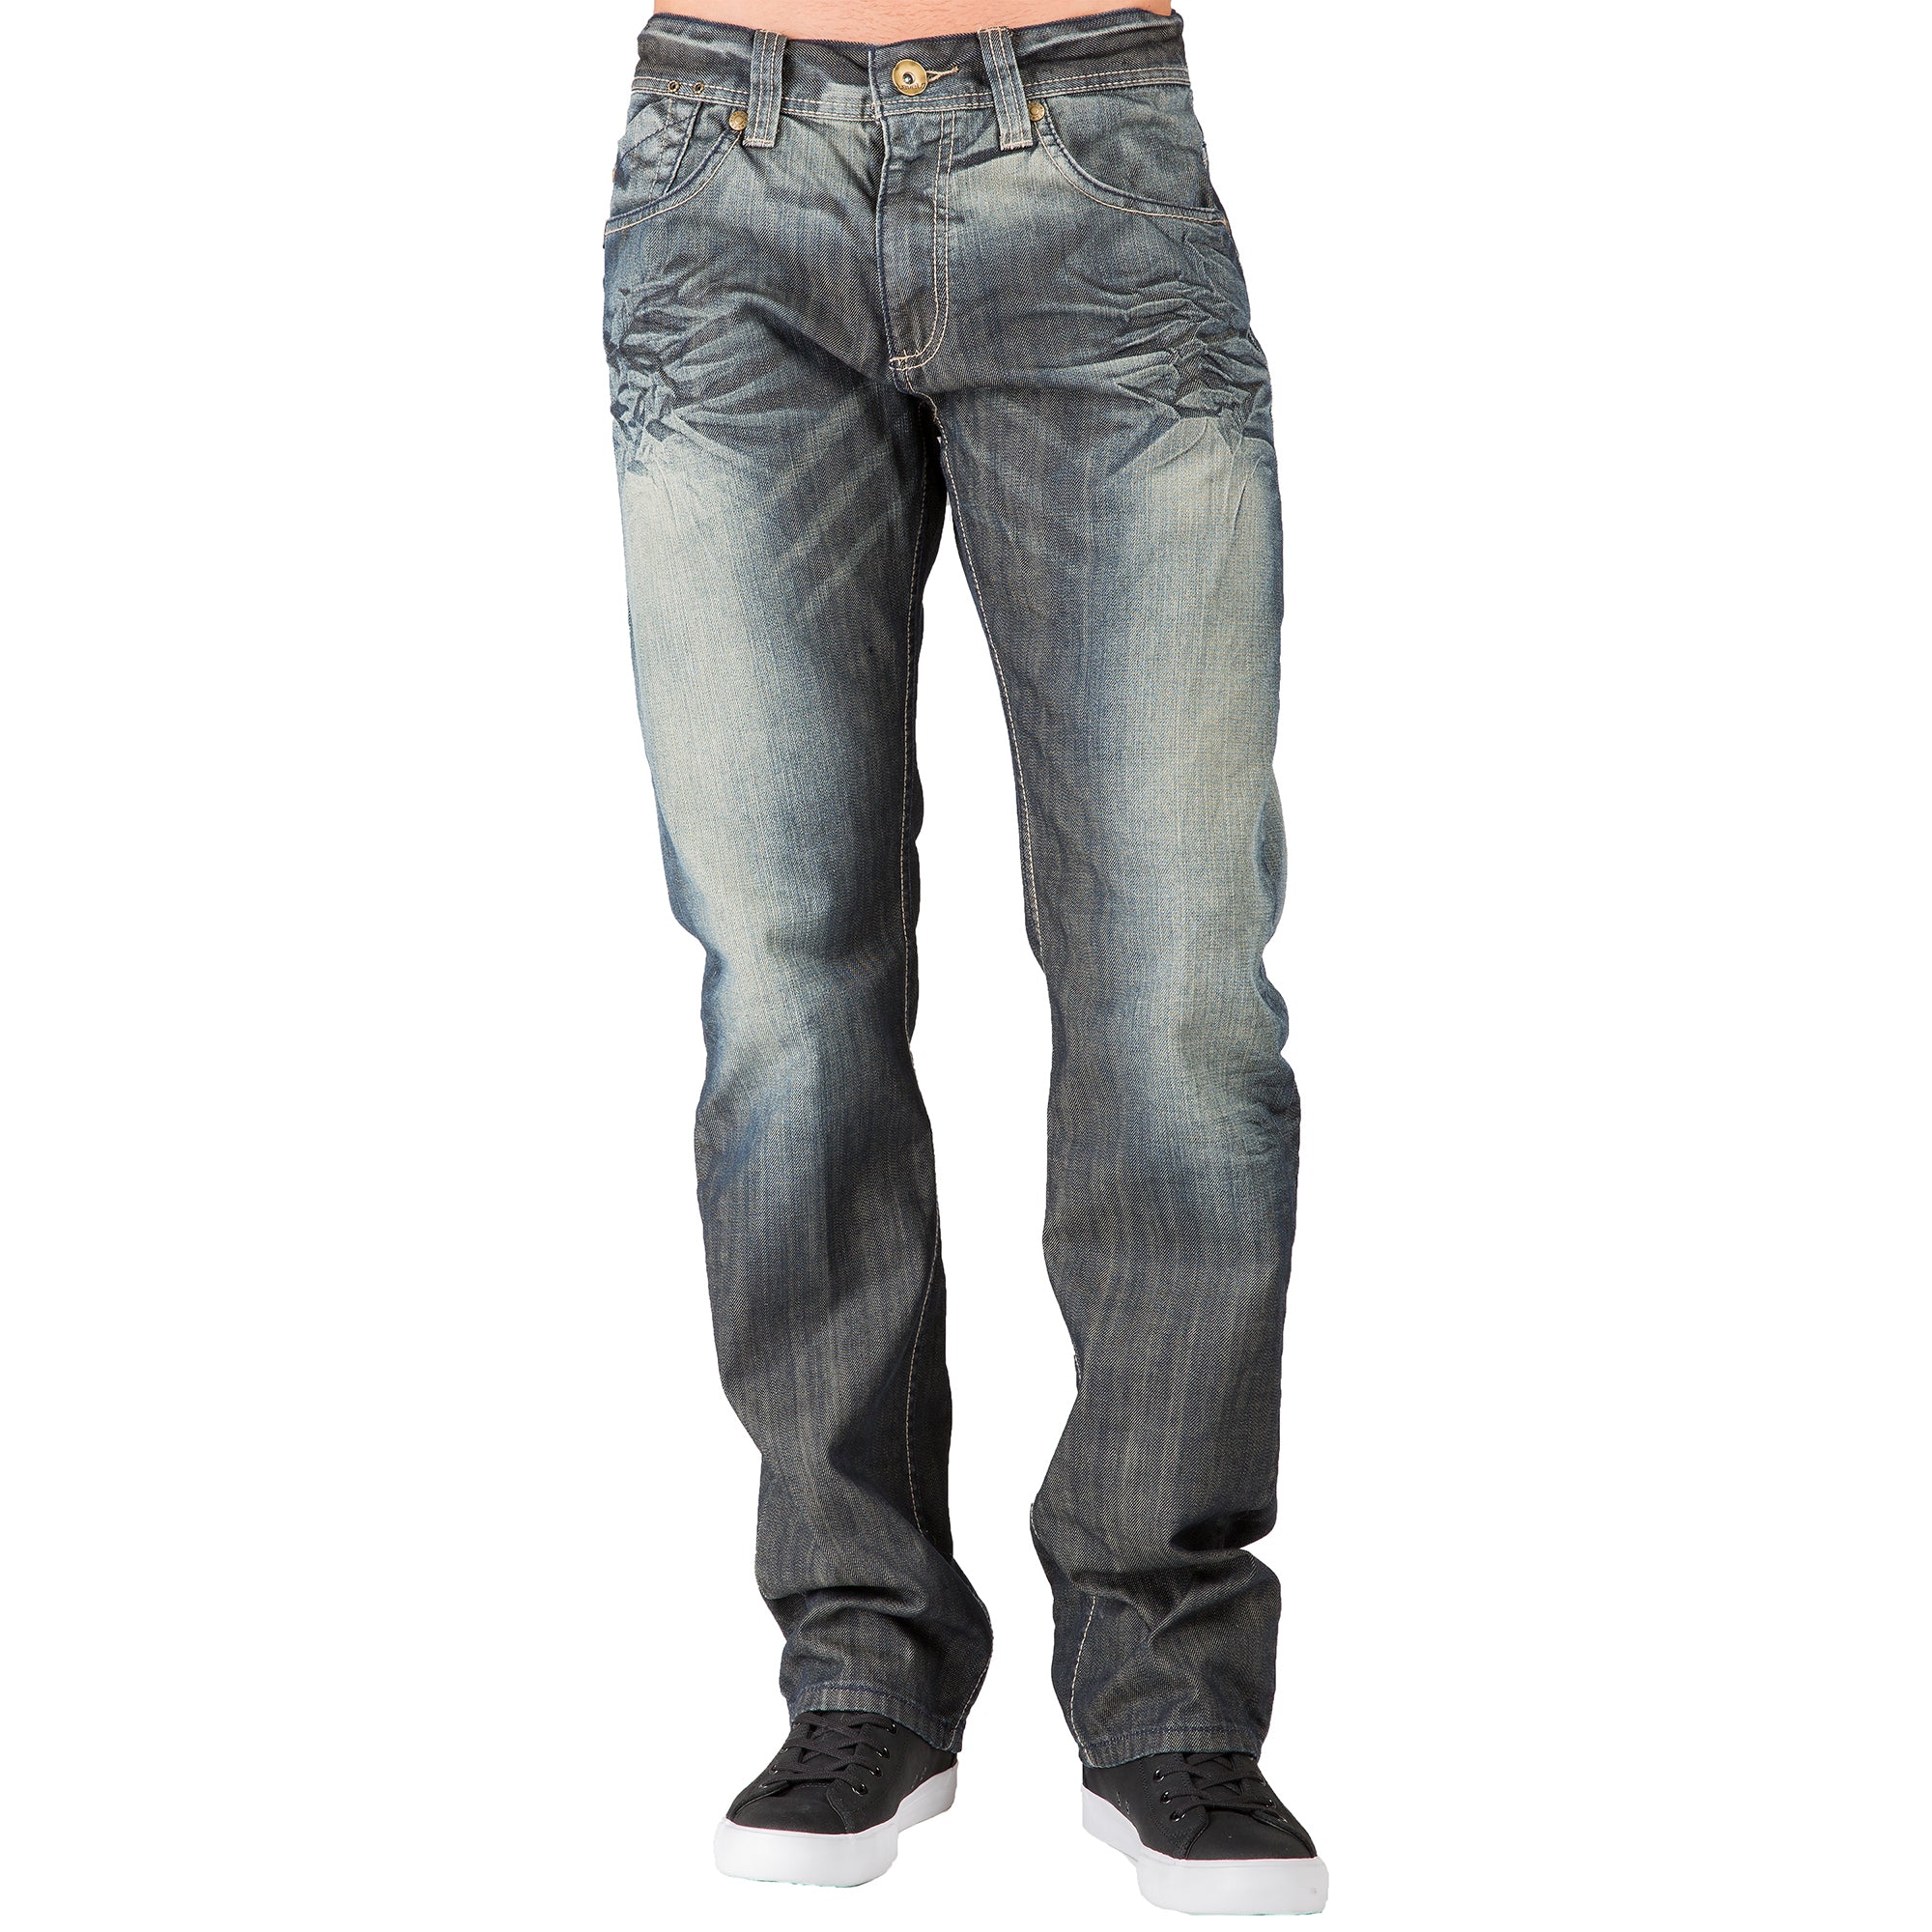 Dark Tint Relaxed Straight Leg Premium Denim signature 5 pocket Jeans Wrinkle Whiskering